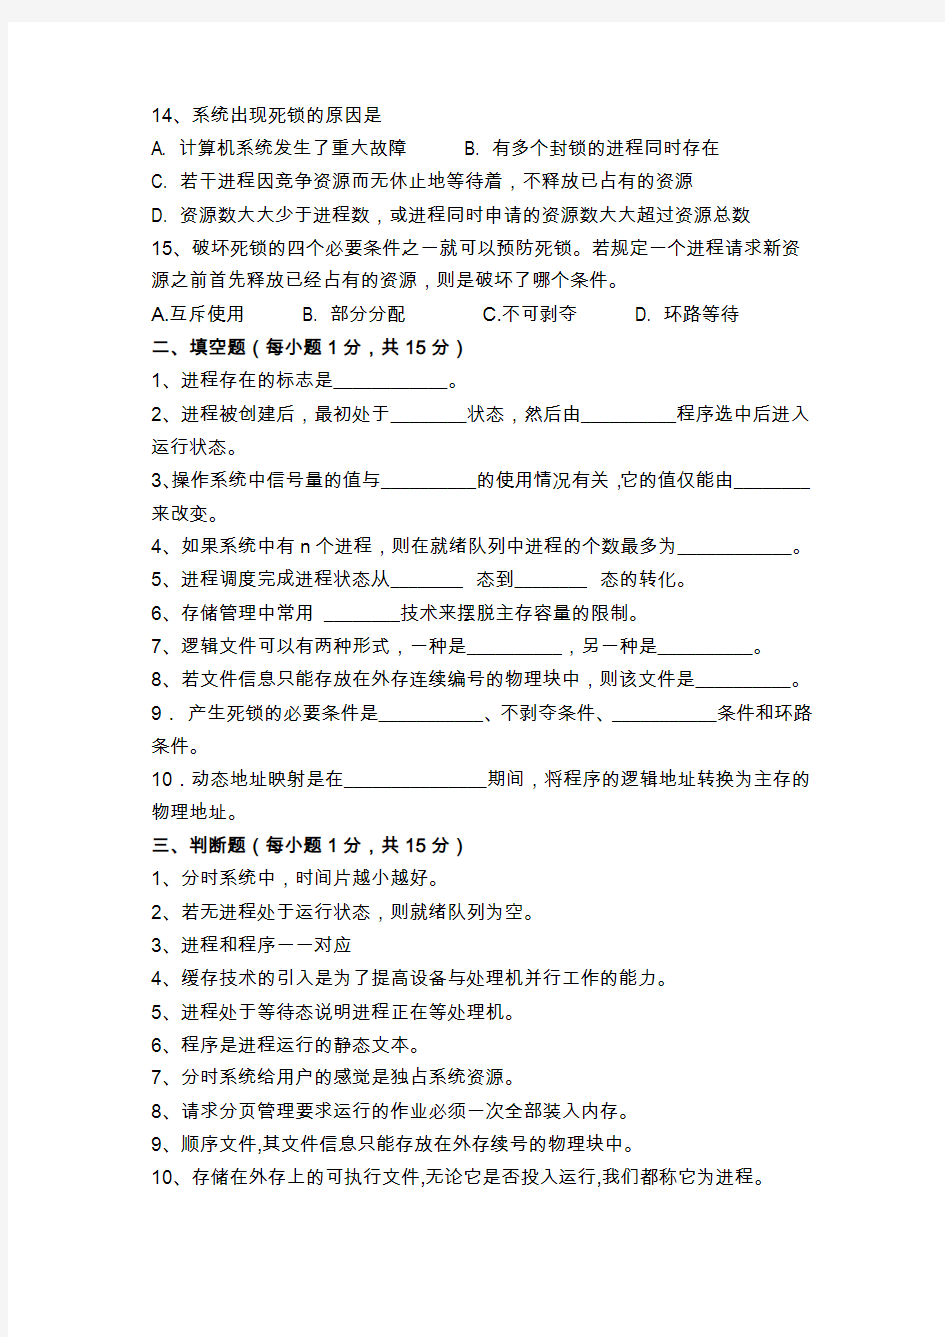 武汉科技大学操作系统考试试卷